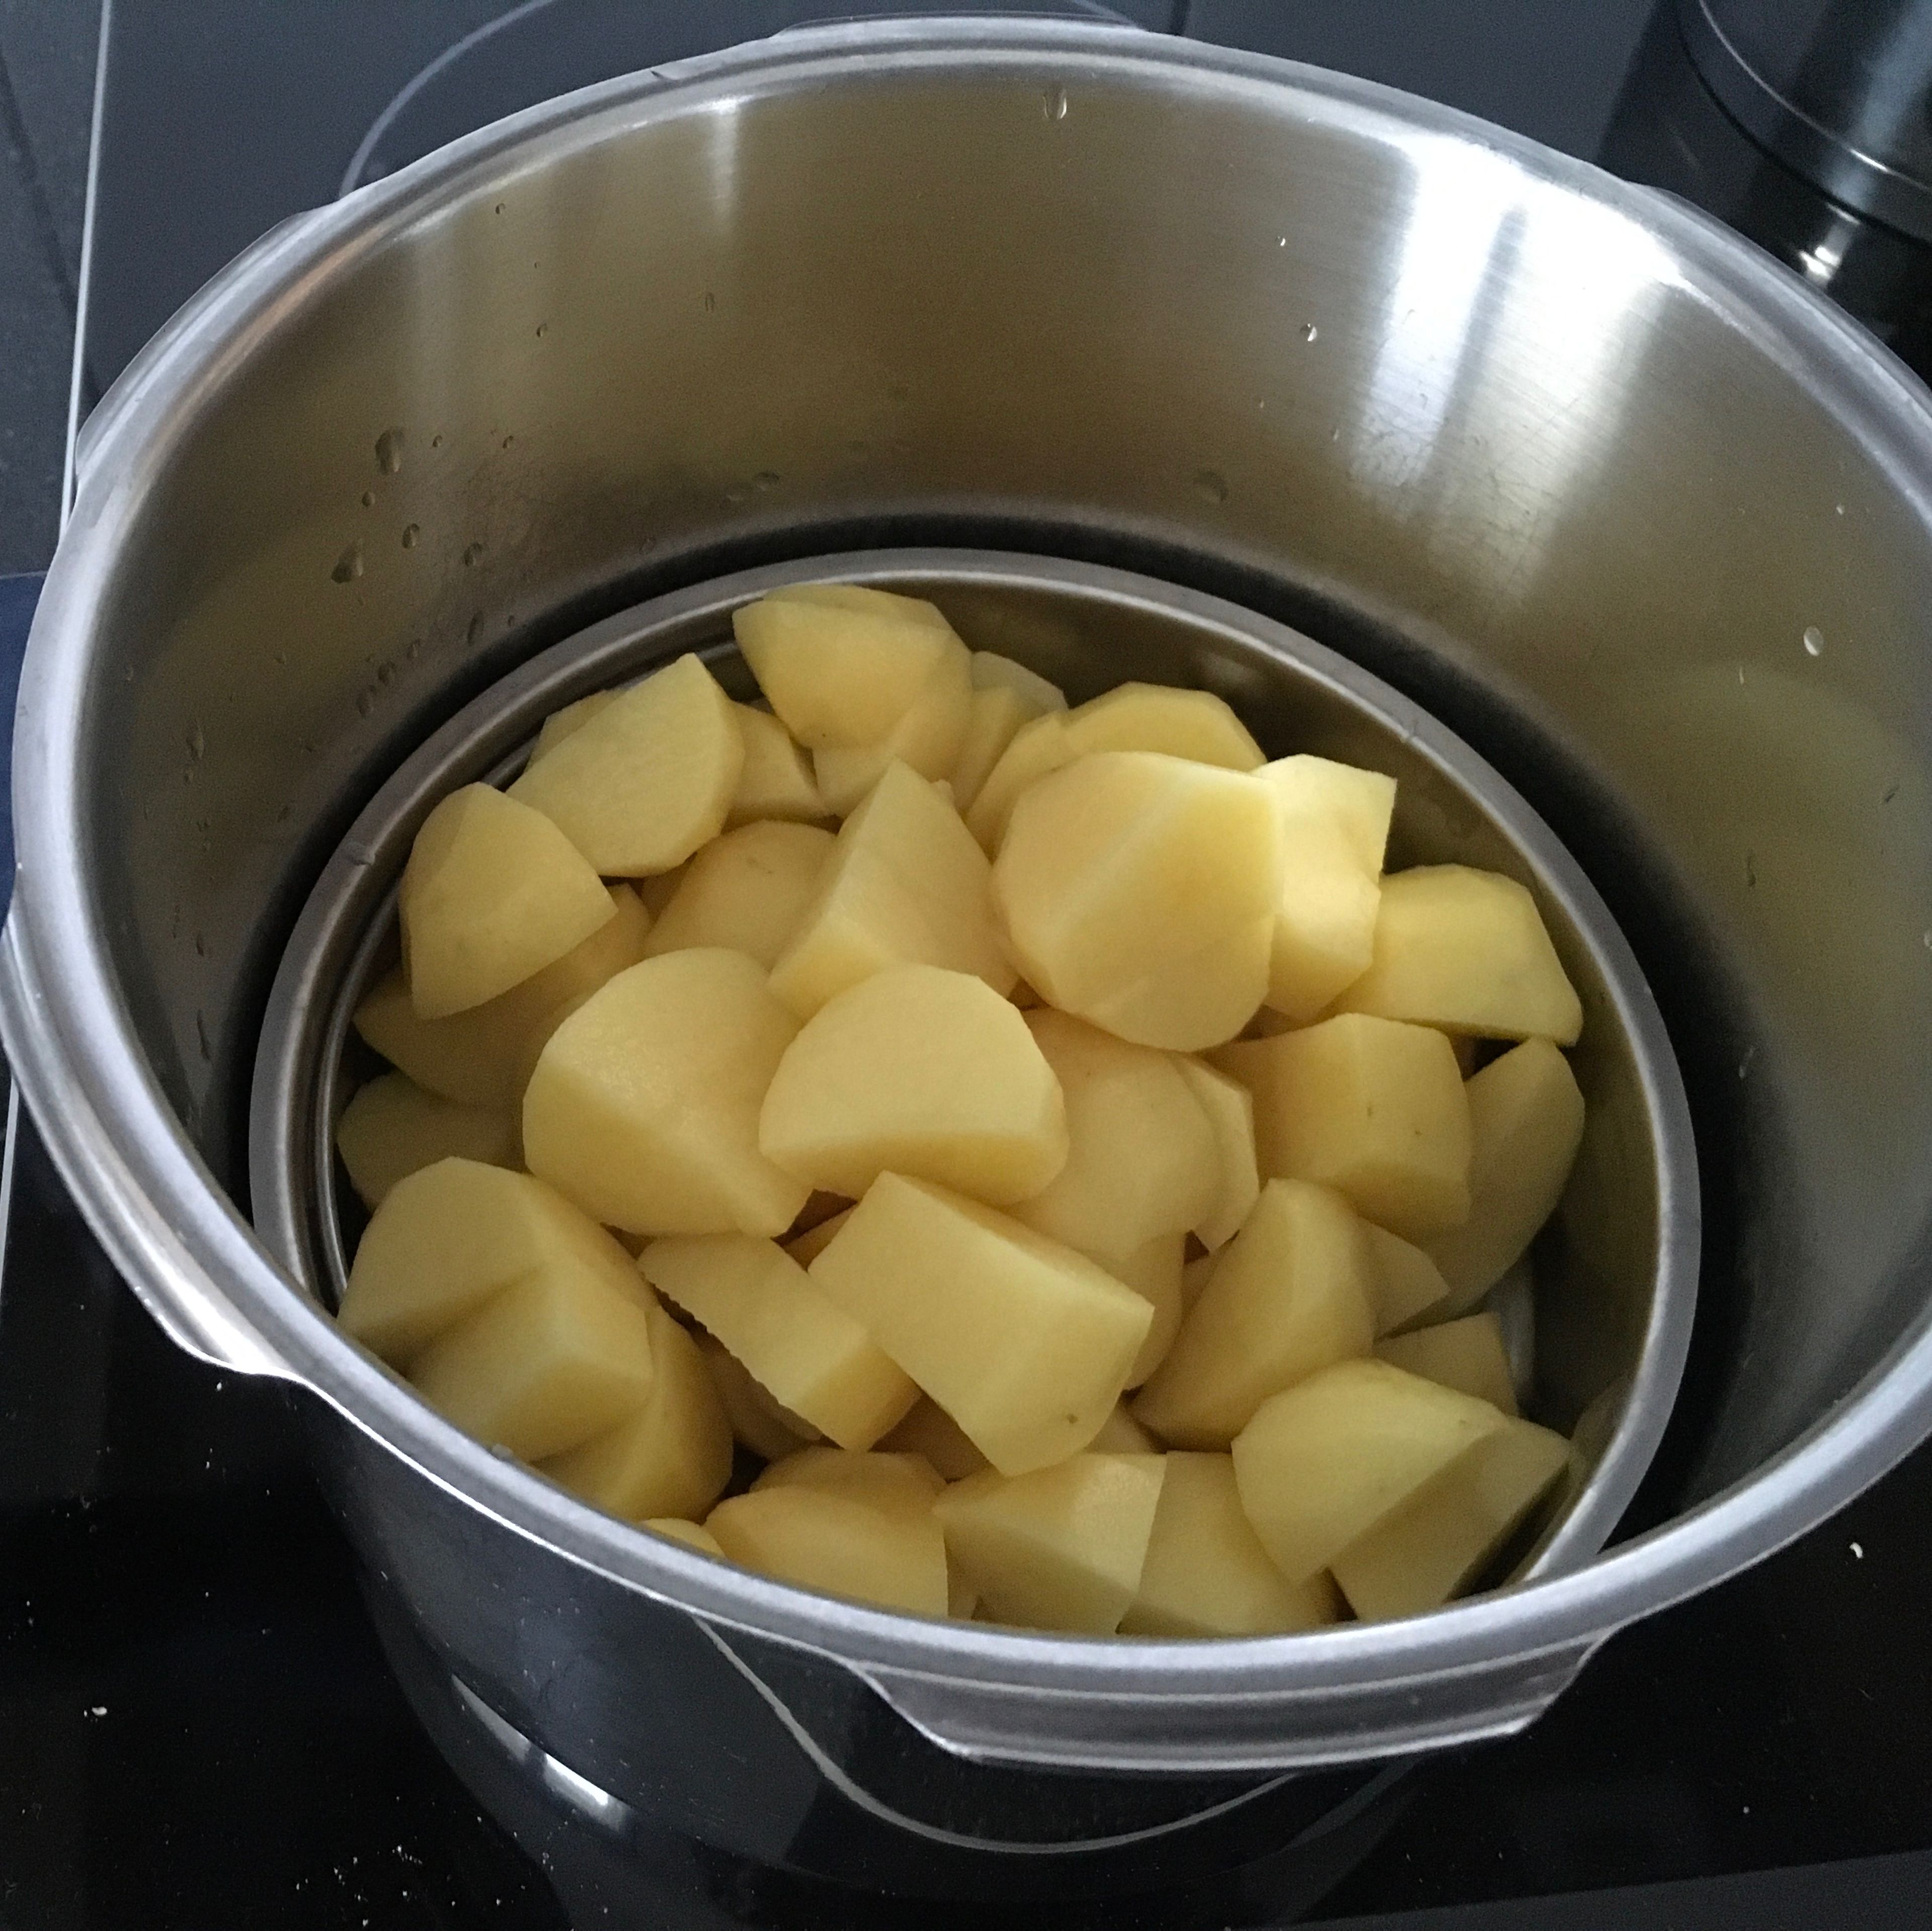 Schneide die Kartoffeln in Stücke und gib sie in den Dampfkocher.